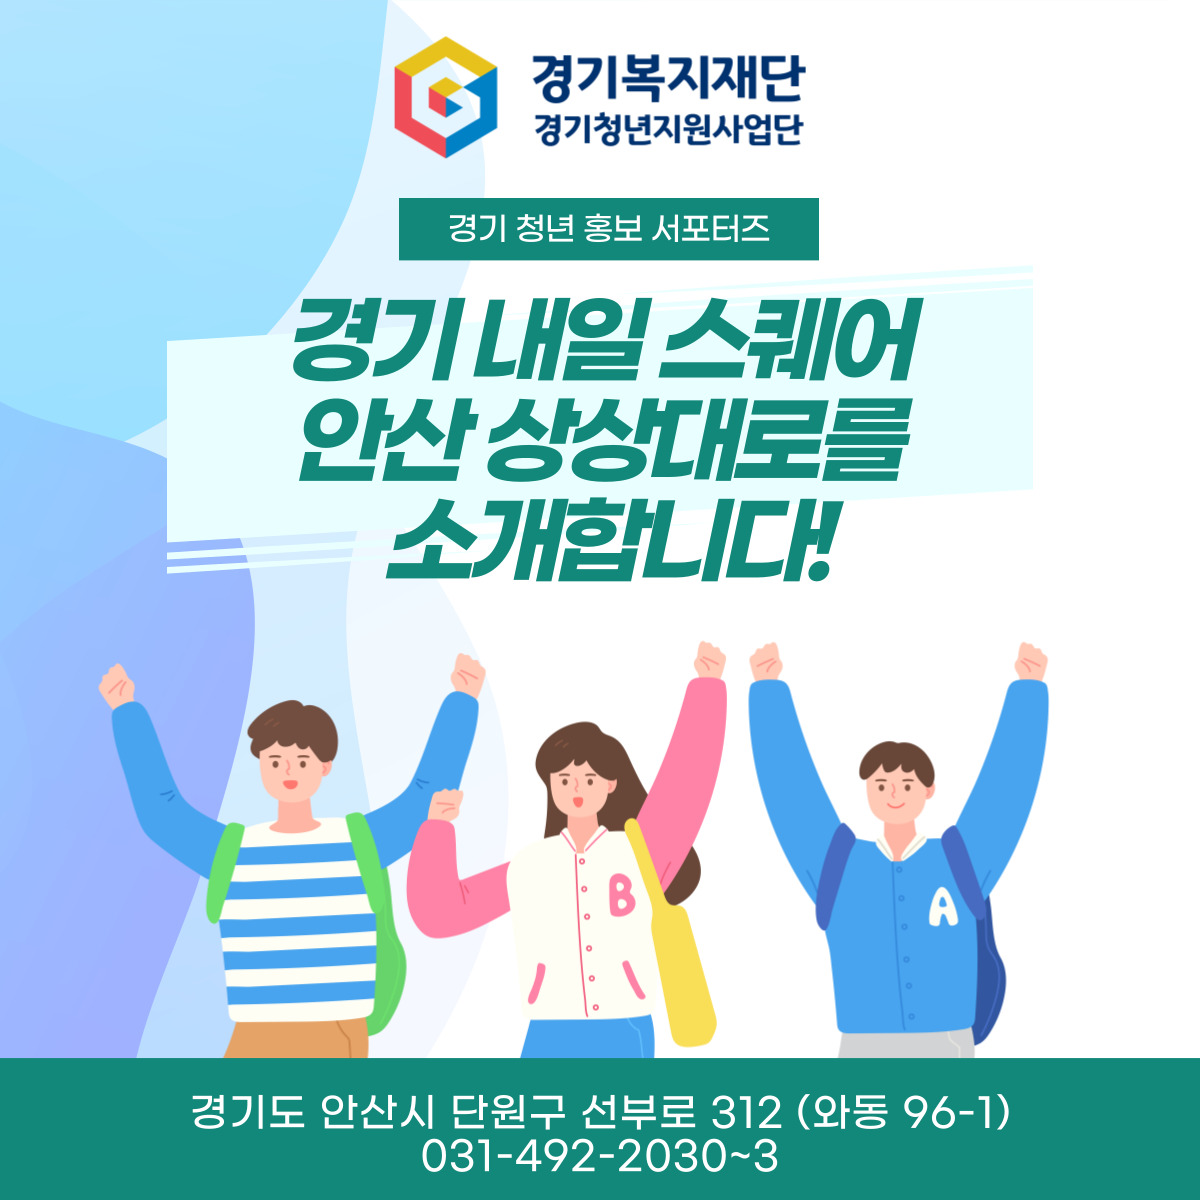 경기도 청년공간 : 서부 < 경기 내일 스퀘어 안산 상상대로>